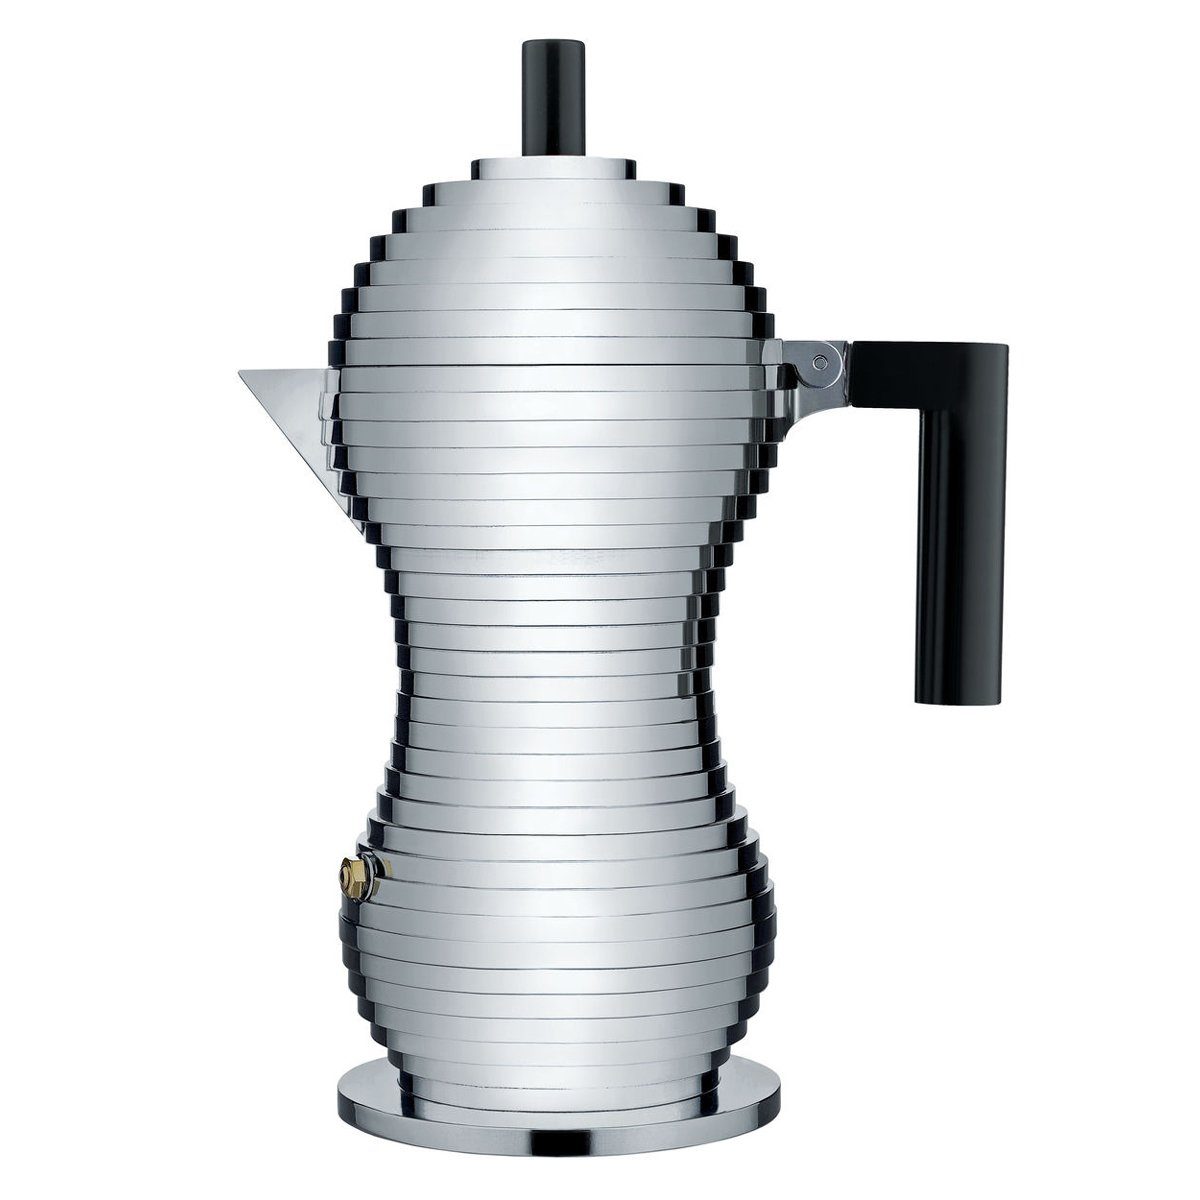 Alessi Espressokocher Espressokocher PULCINA 30 cl, schwarz, 0.3l Kaffeekanne, Nicht für Induktion geeignet